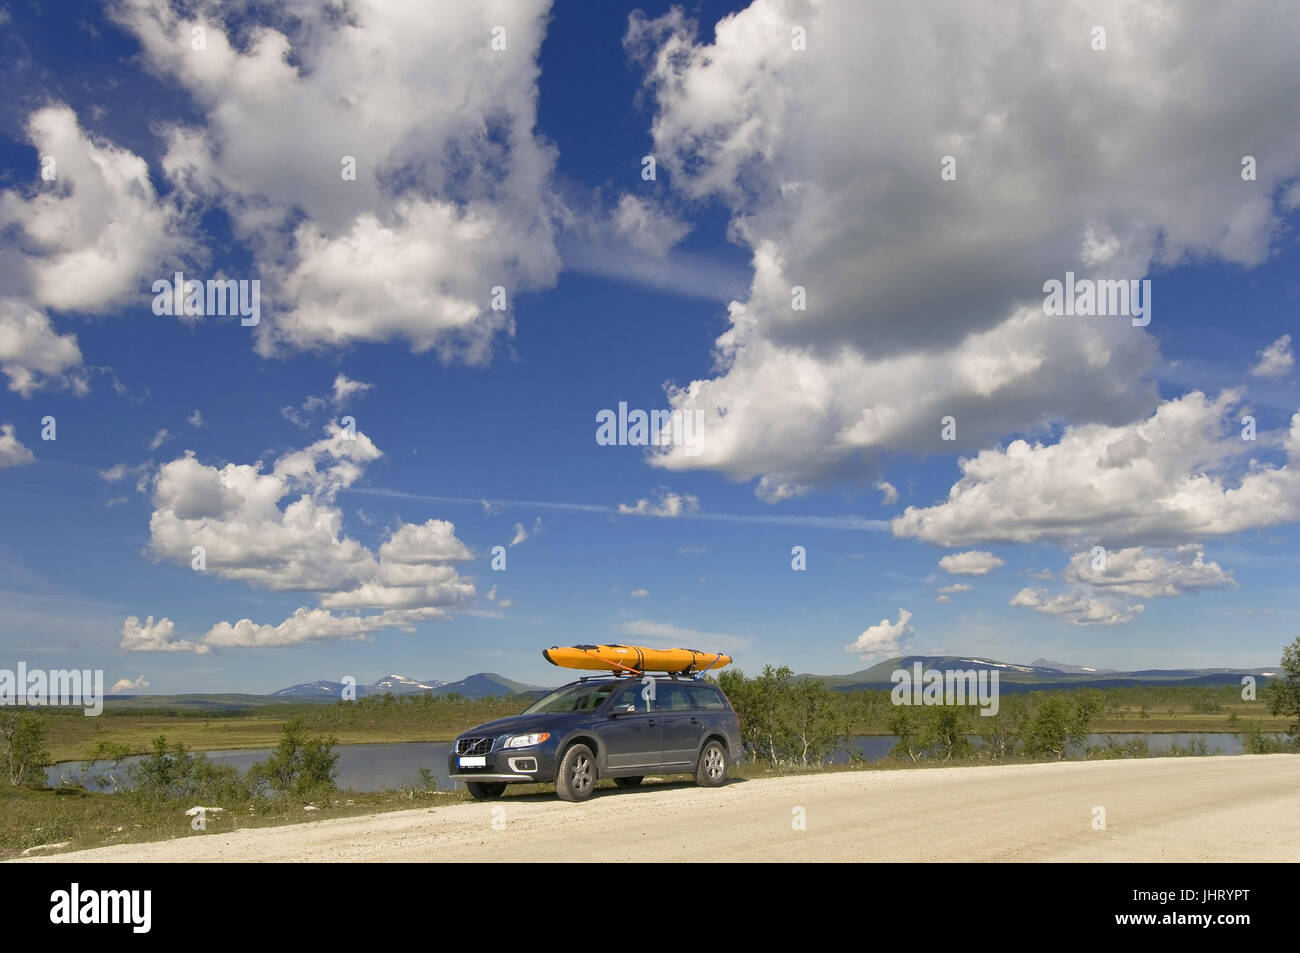 Volvo con kayak sul tetto, Volvo mit Kajak auf dem Dach Foto Stock